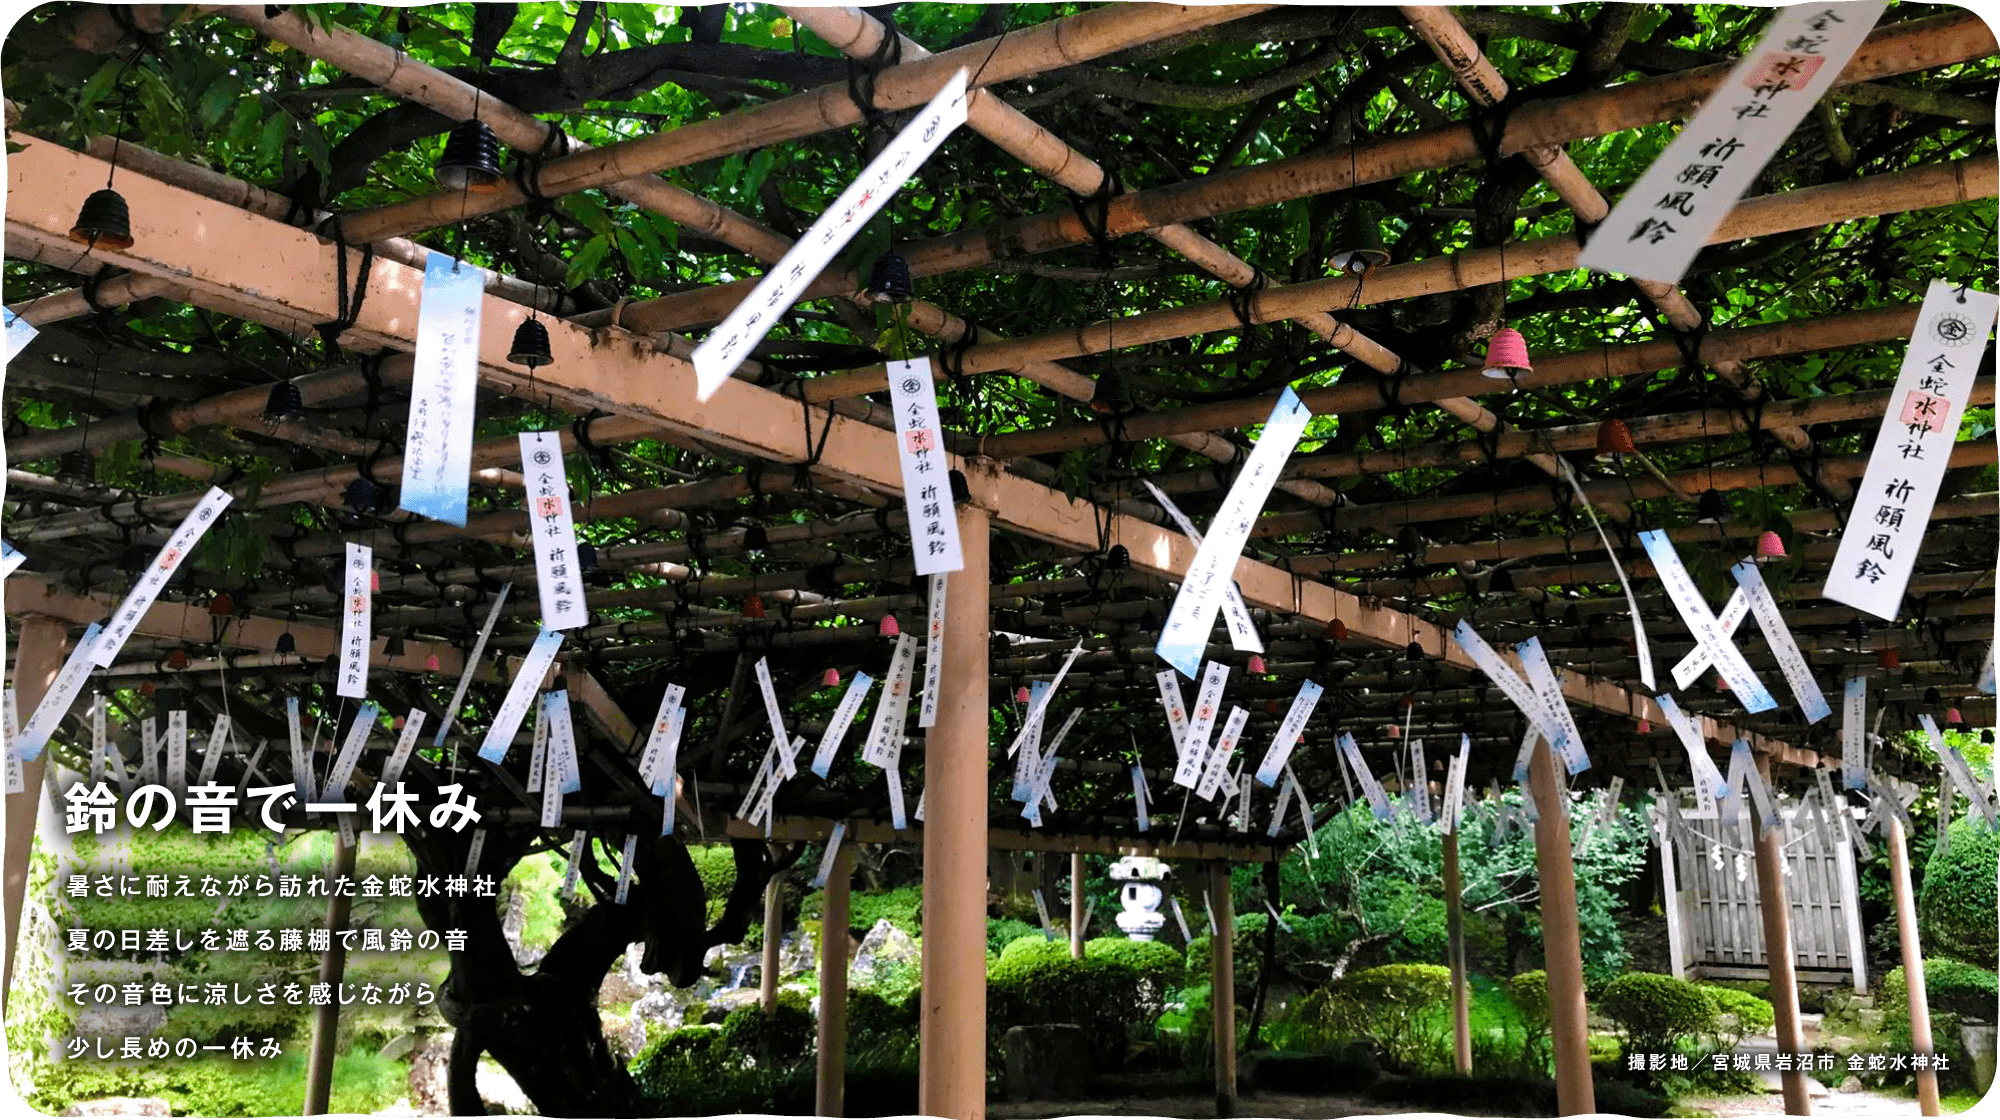 暑さに耐えながら訪れた金蛇水神社 夏の日差しを遮る藤棚で風鈴の音 その音色に涼しさを感じながら少し長めの一休み